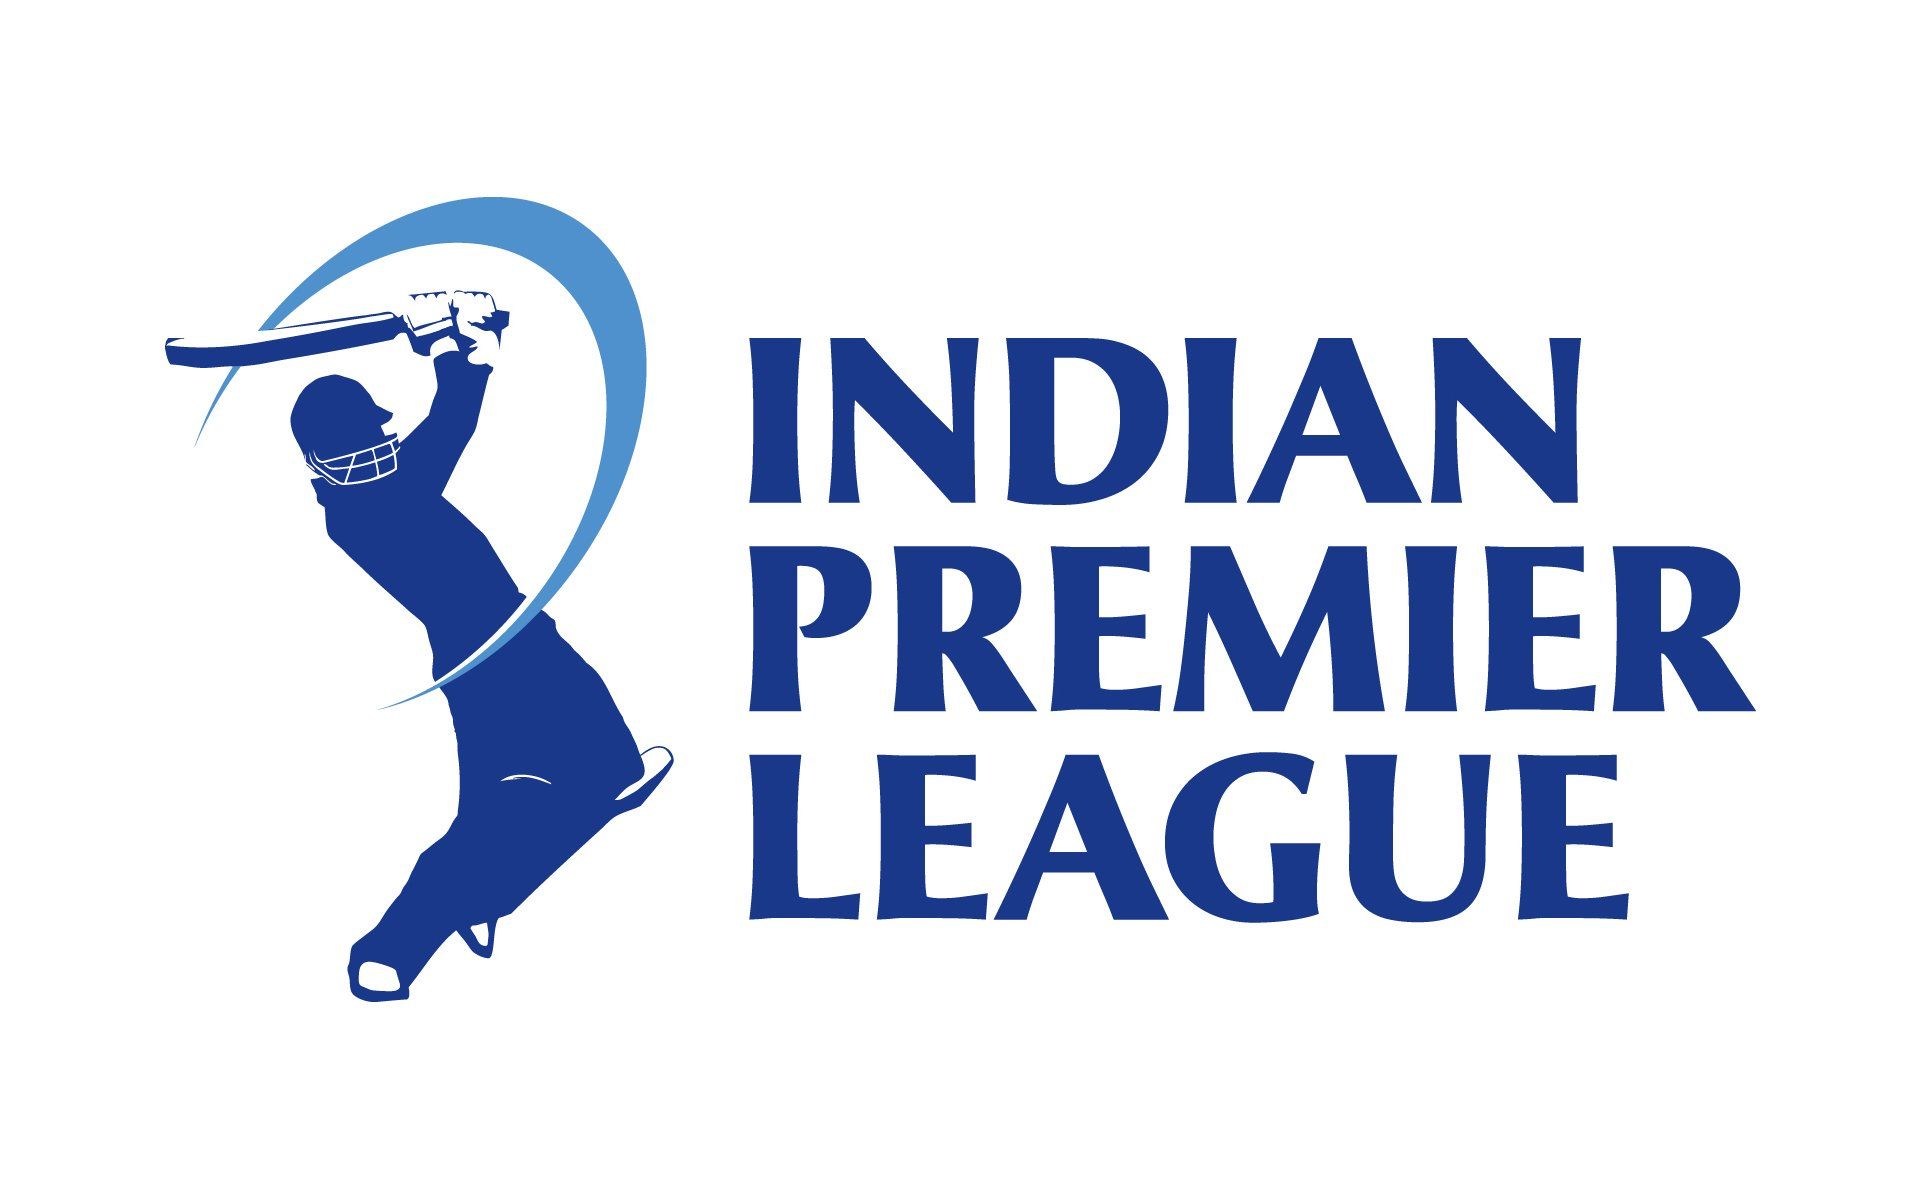 Indian Premier League 2020